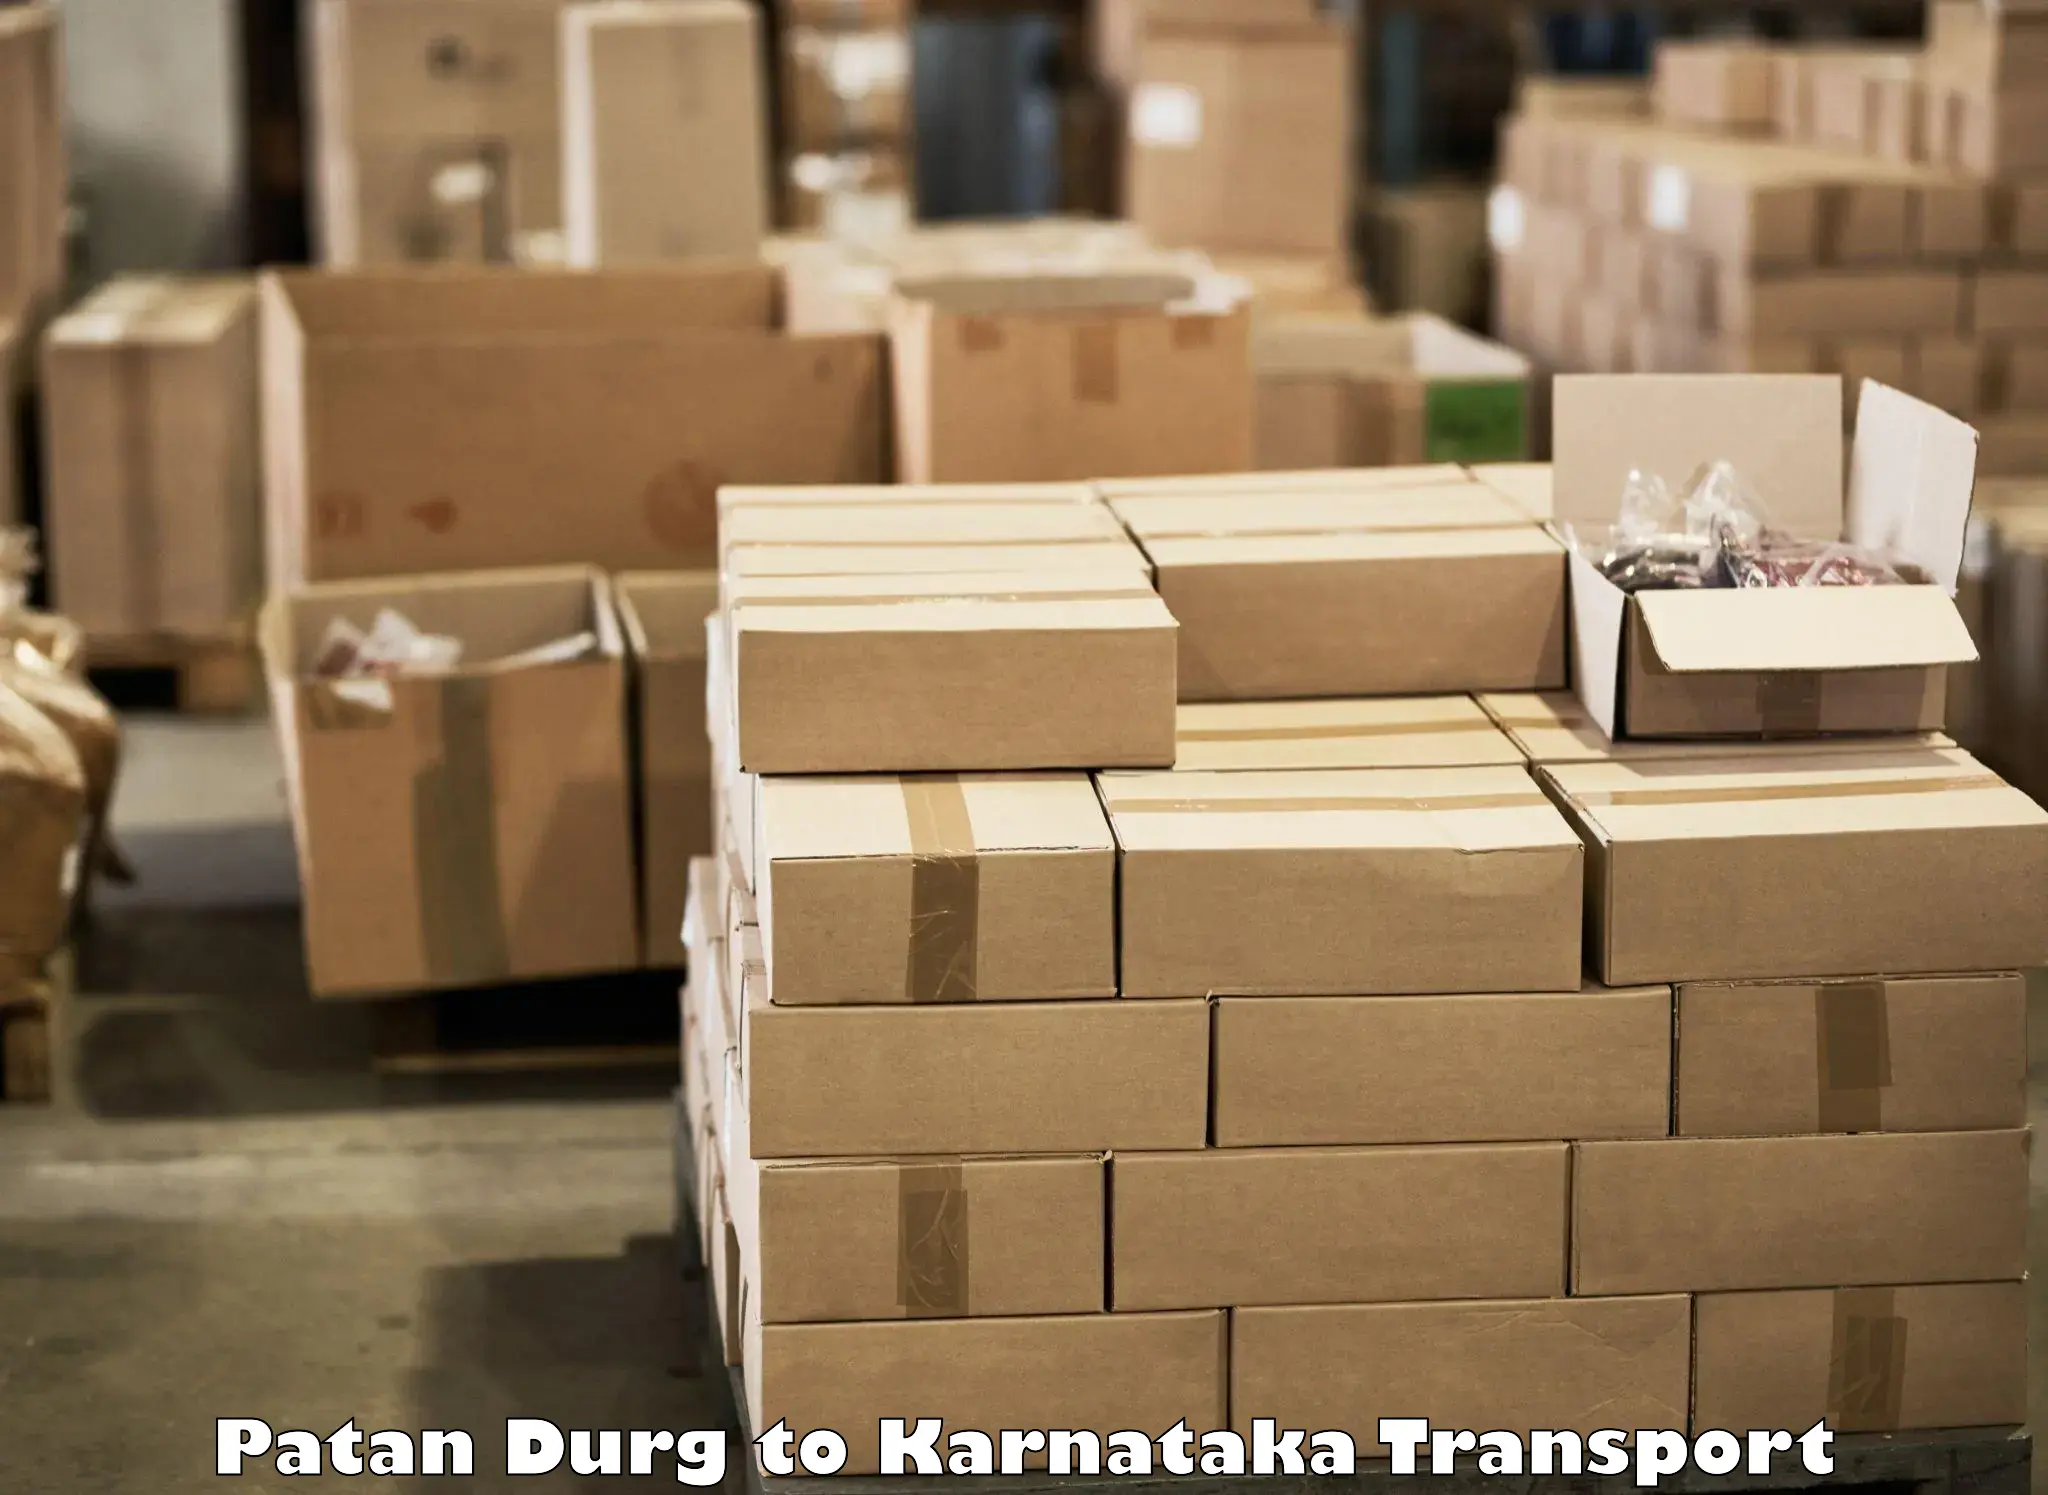 Transport in sharing Patan Durg to Kushalnagar